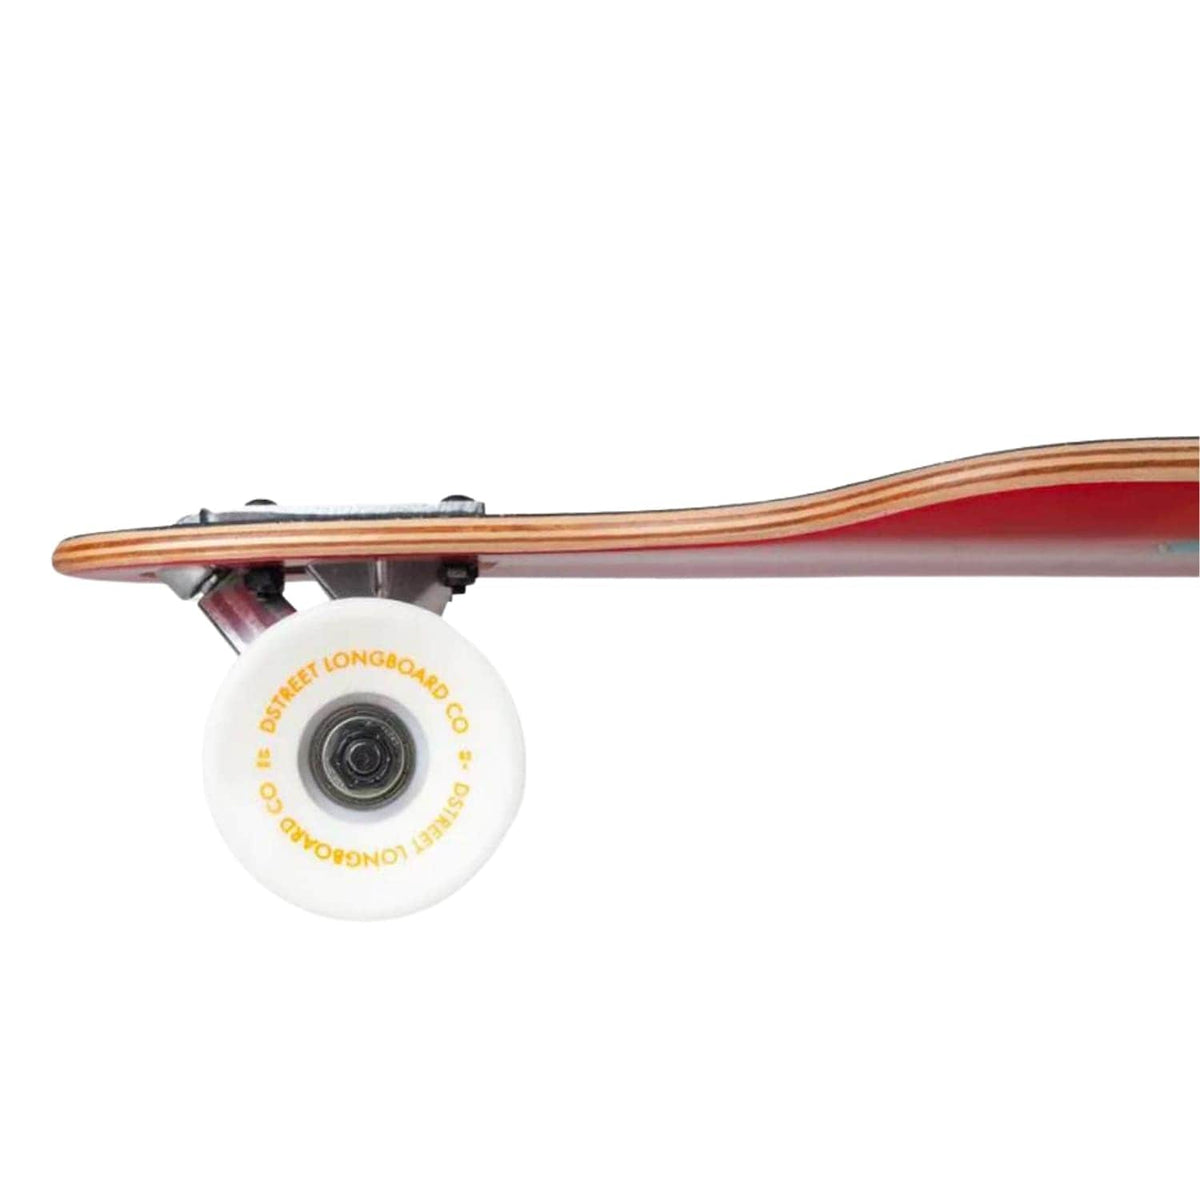 D-Street Horizon Drop Through Longboard Skateboard Multi - Complete Skateboard by D-Street 37 inch